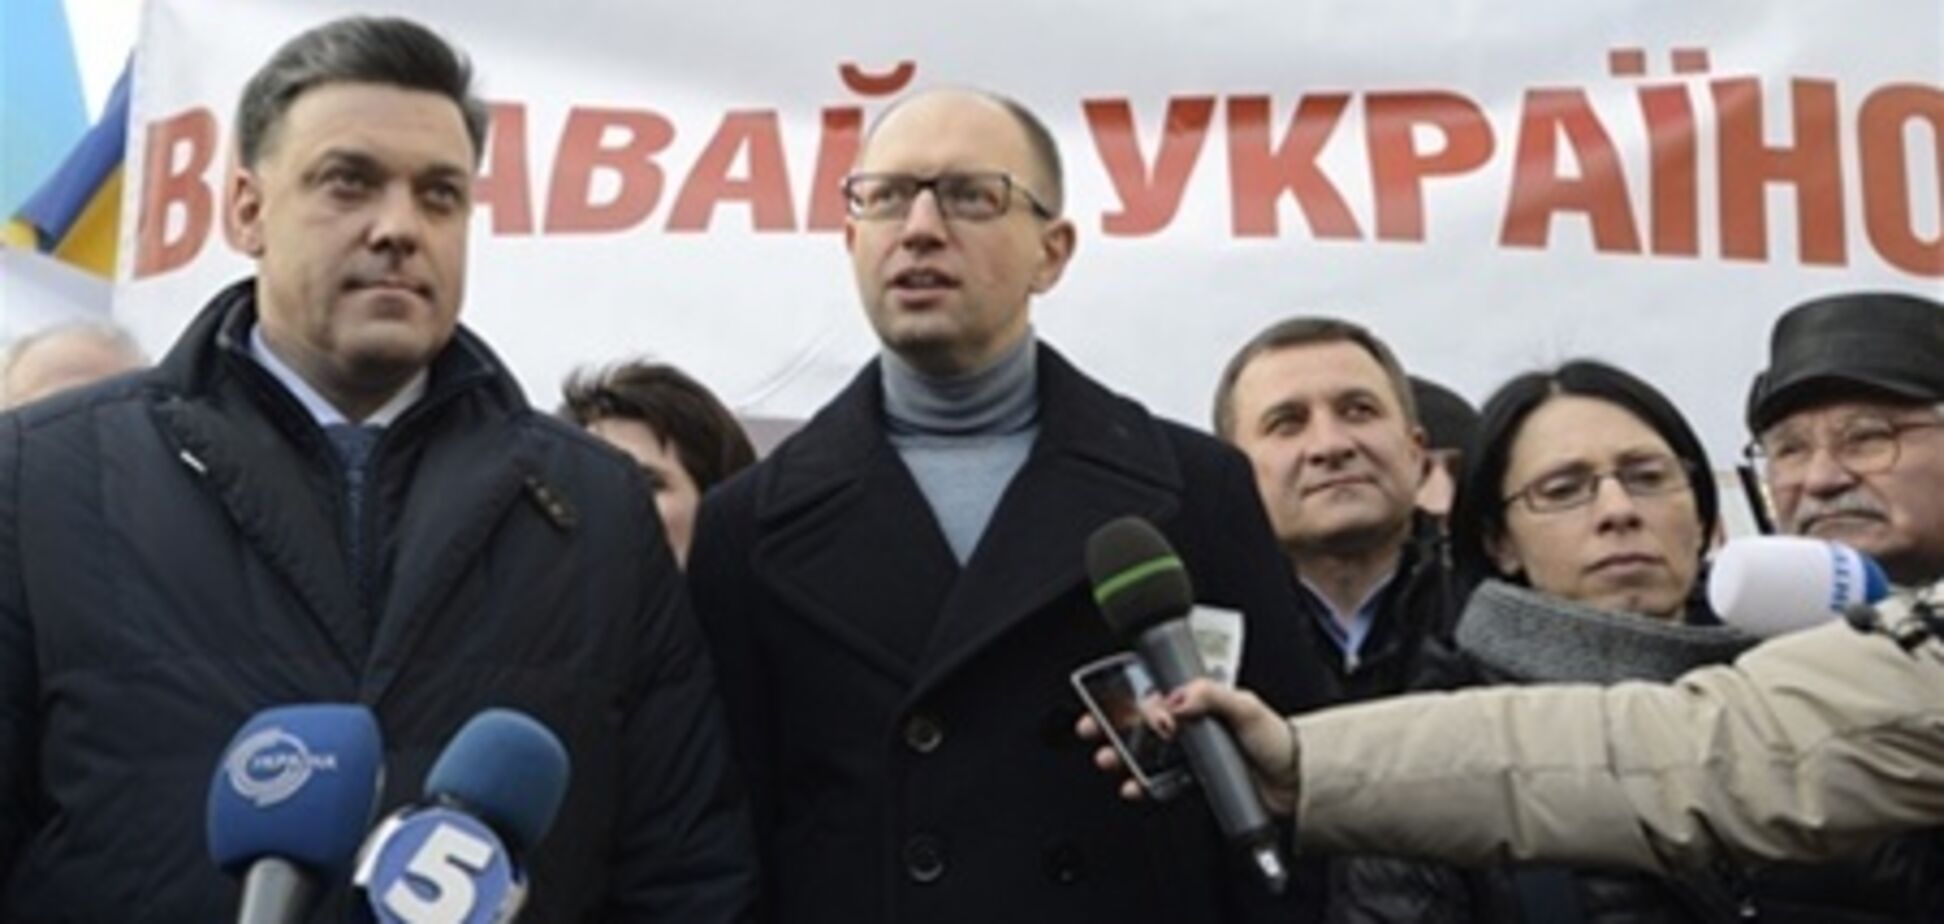 Шосте 'повстання' опозиція призначила на 30 березня у Чернівцях